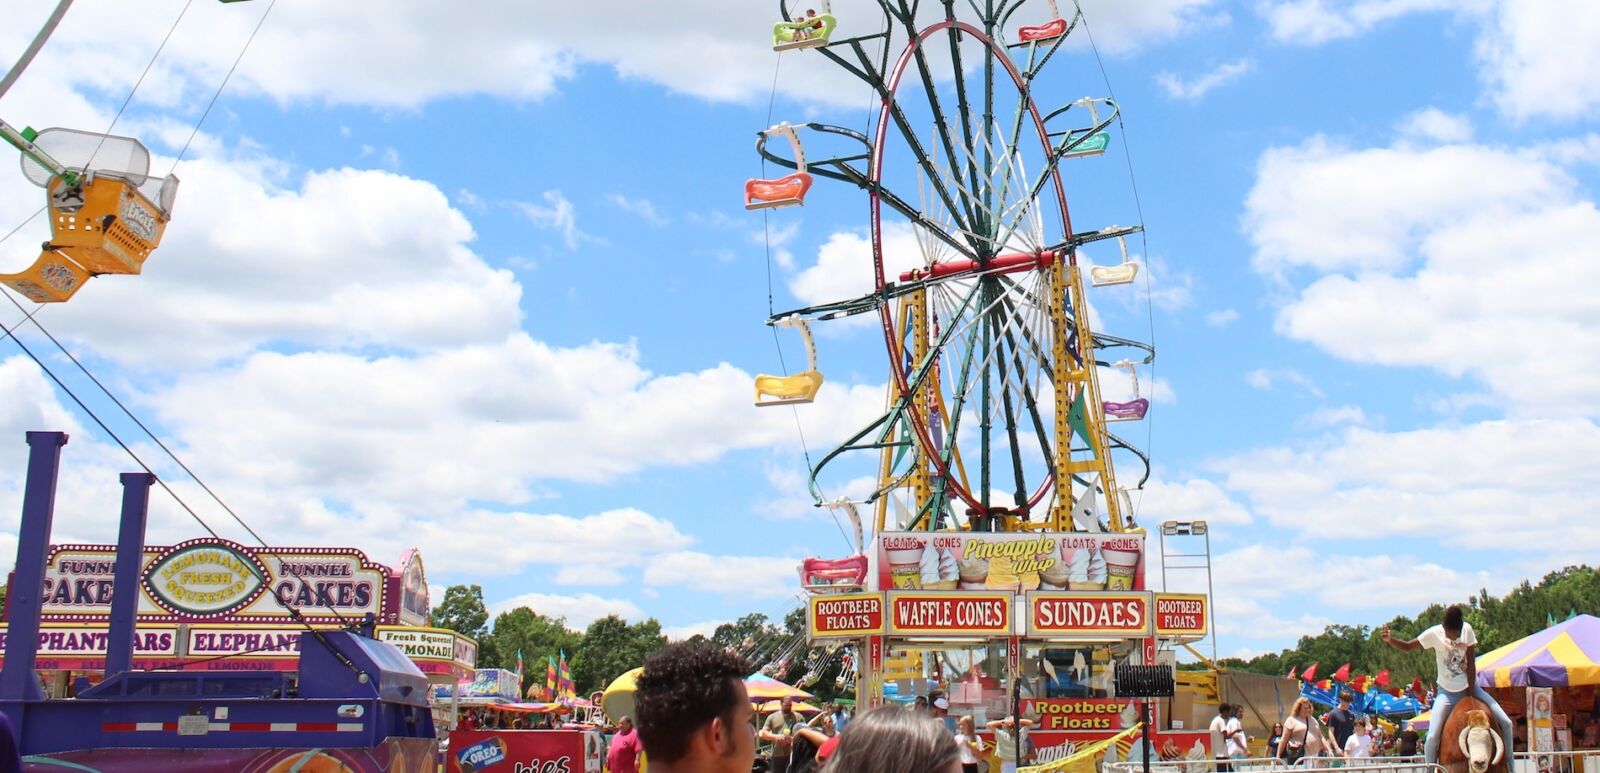 Ferris wheel at a state fair.